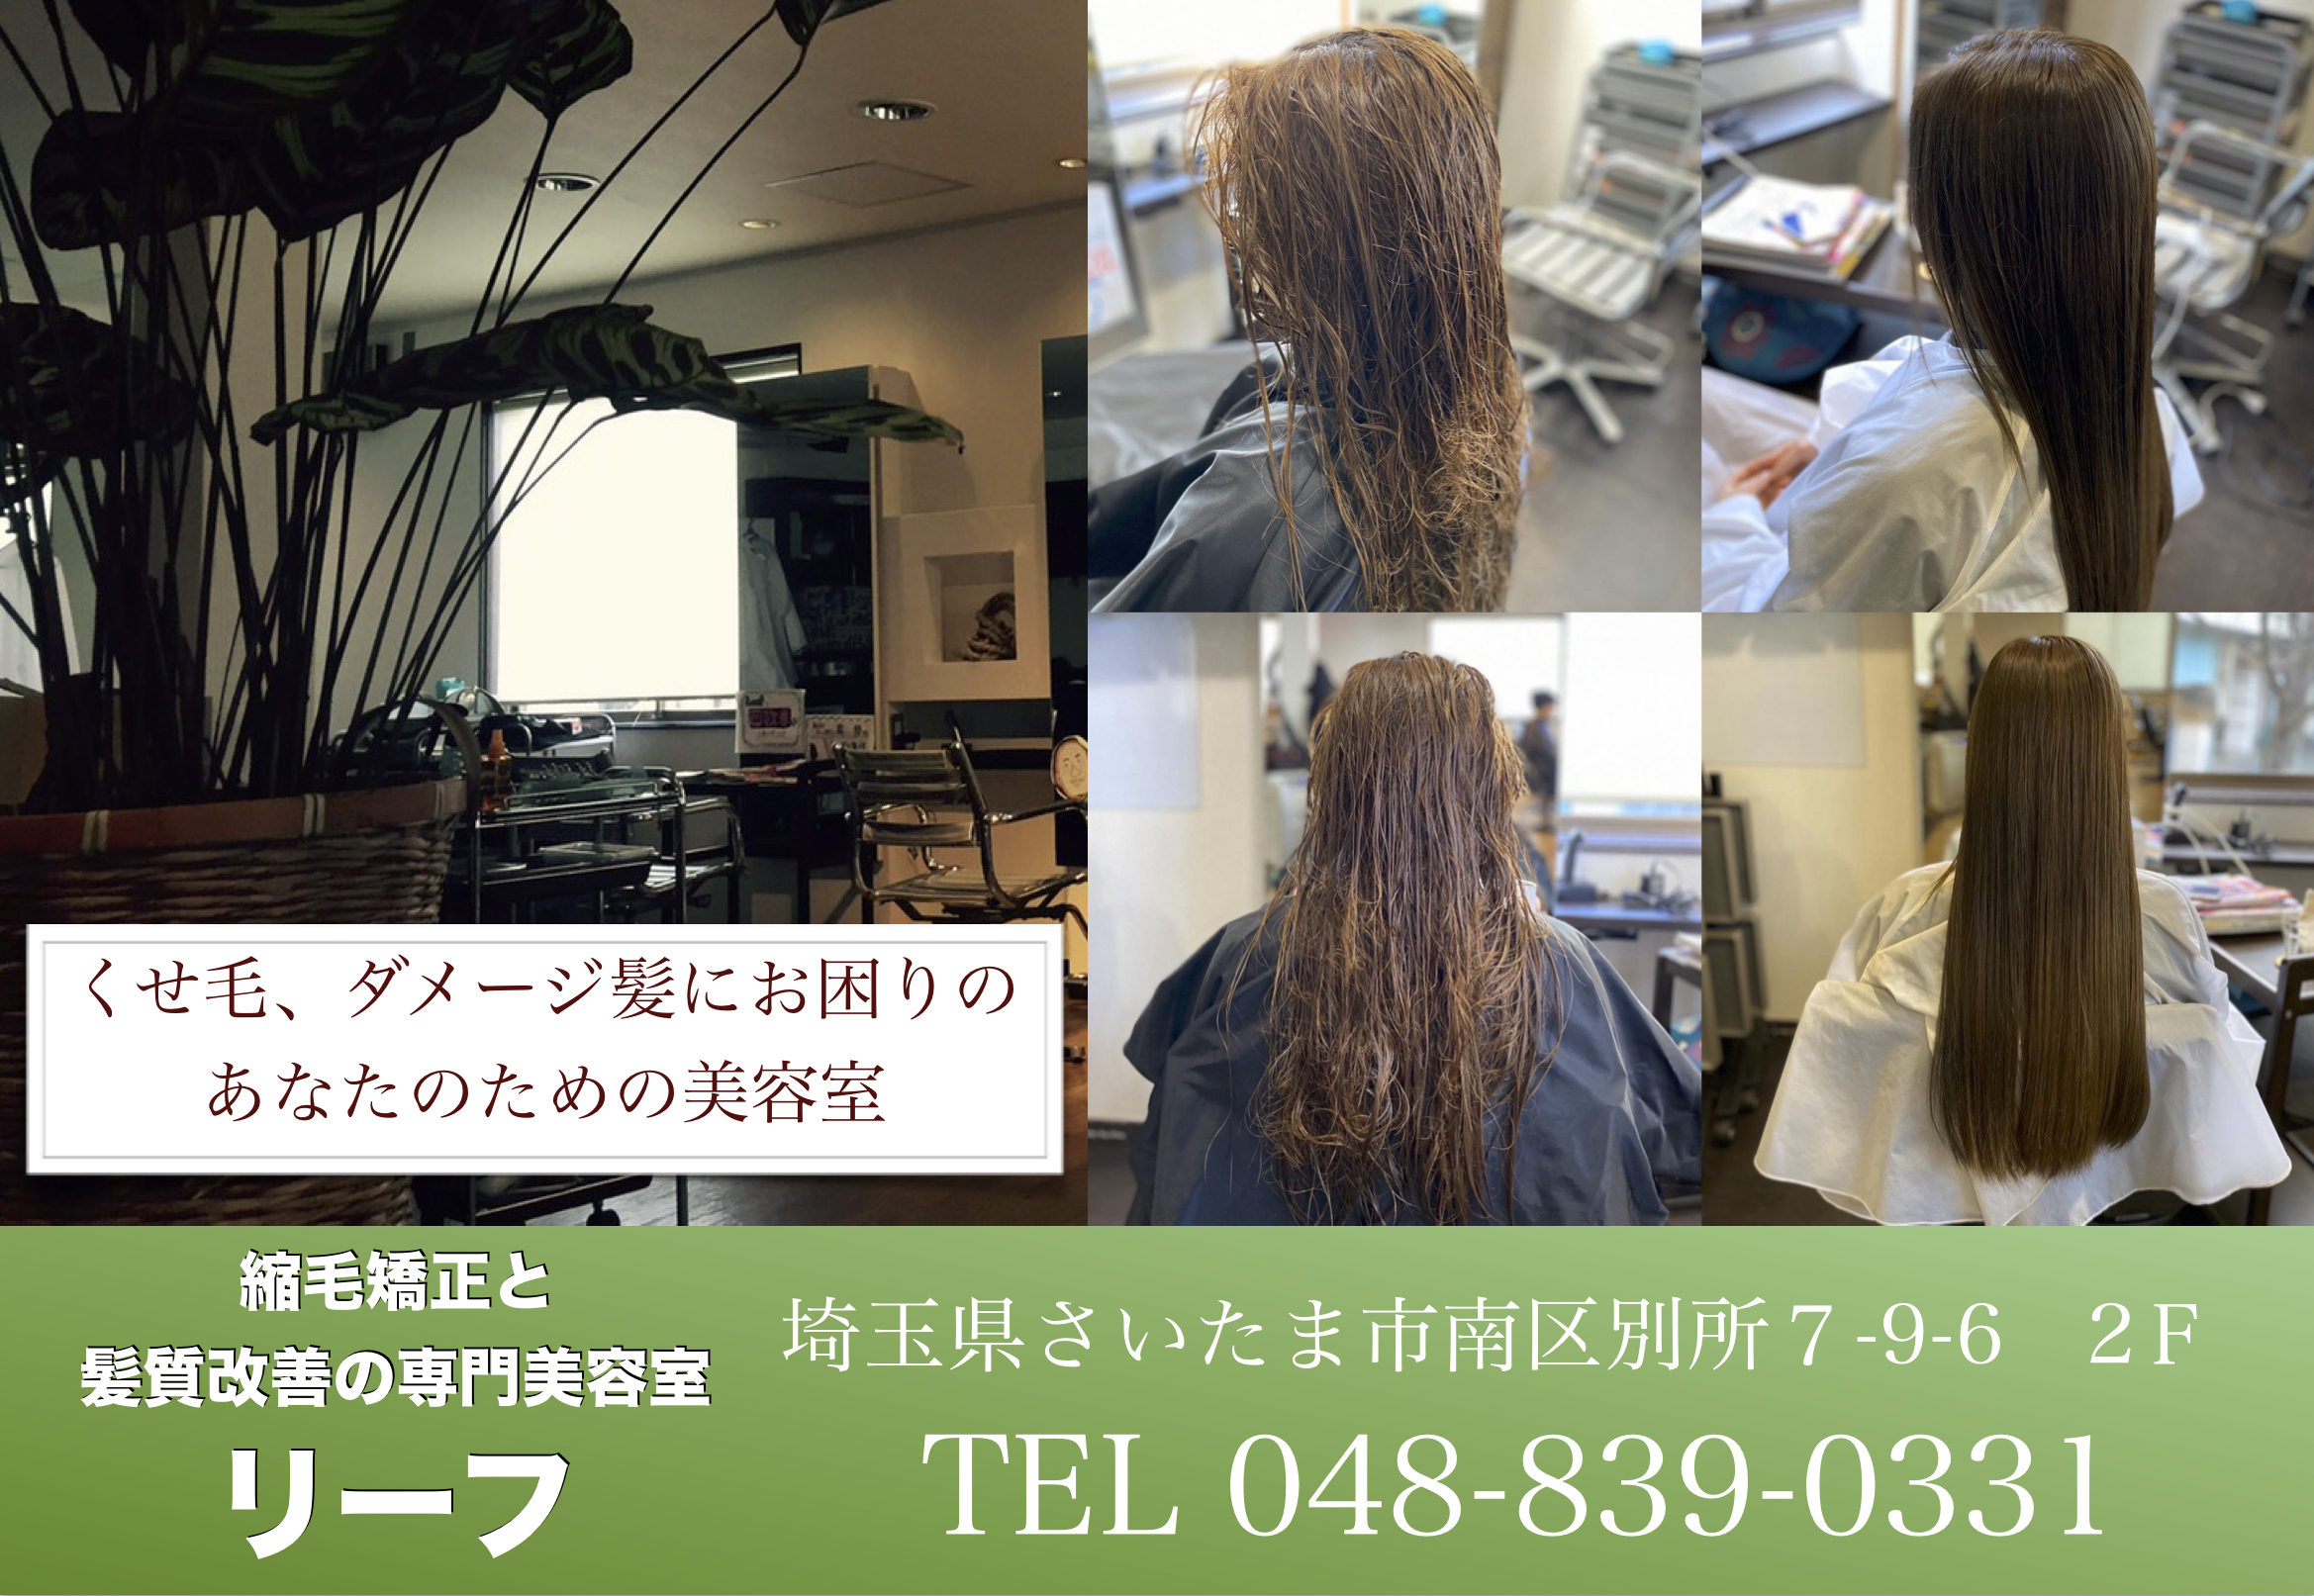 武蔵浦和にある唯一の白髪染めと髪質改善専門の美容院 美容室 リーフ